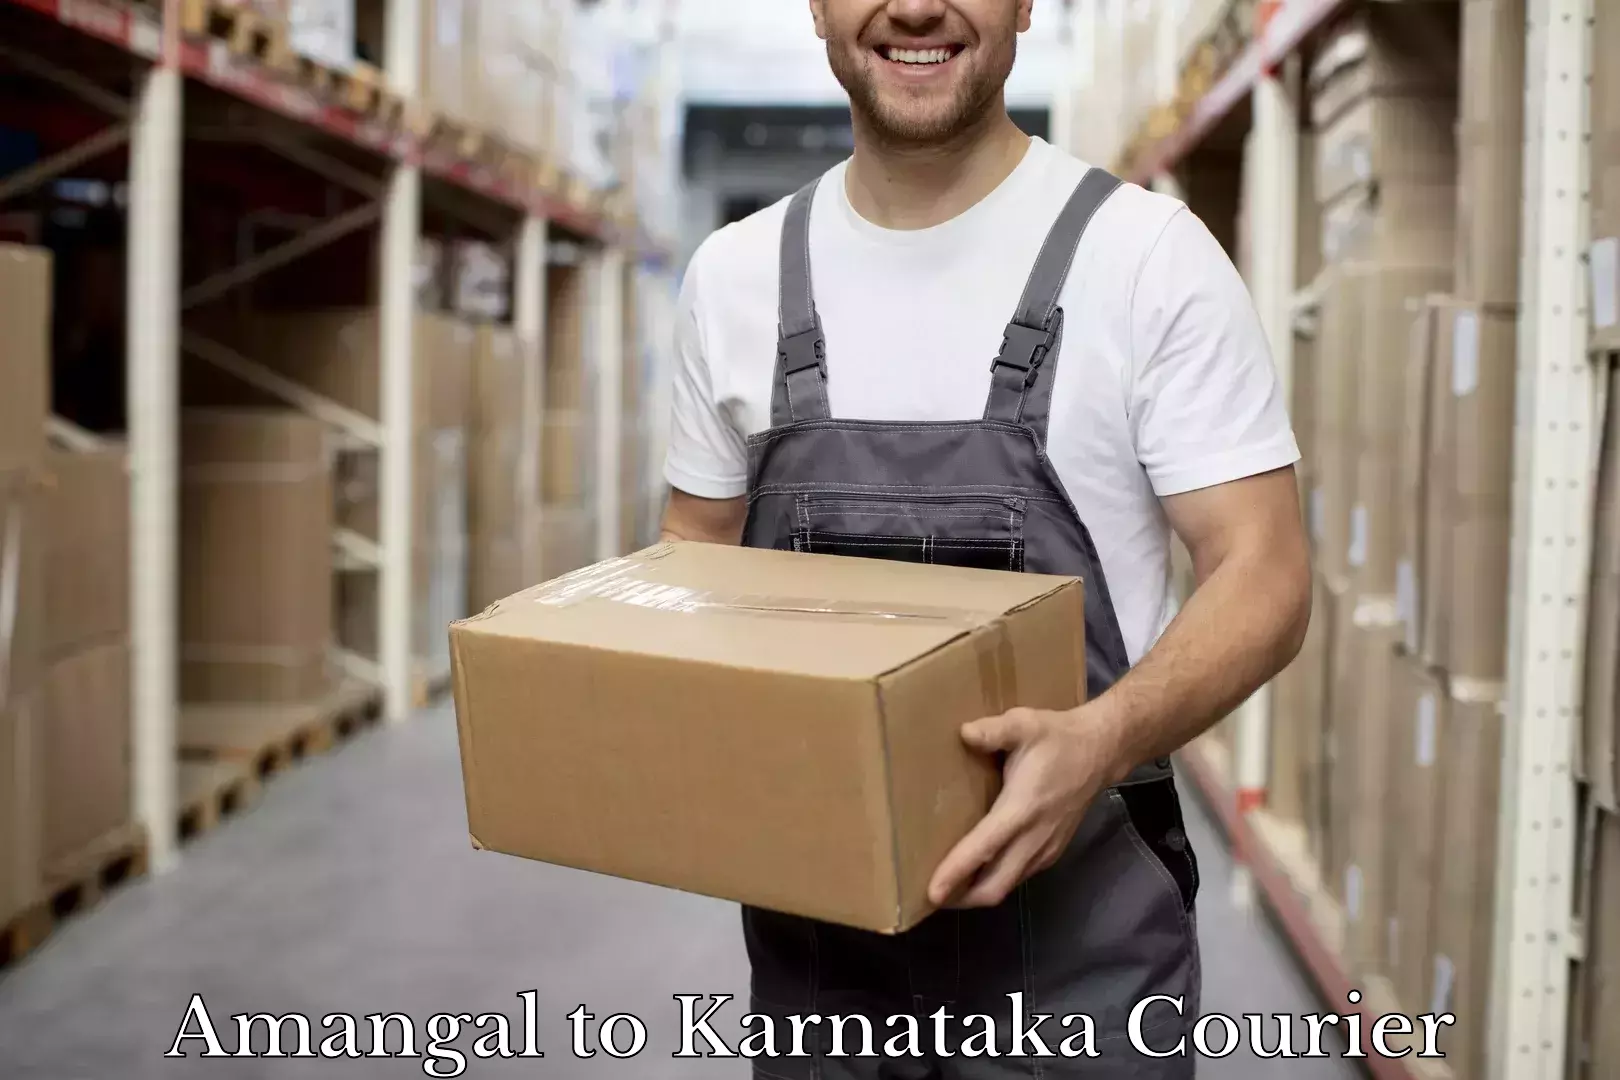 Luggage dispatch service Amangal to Channarayapatna